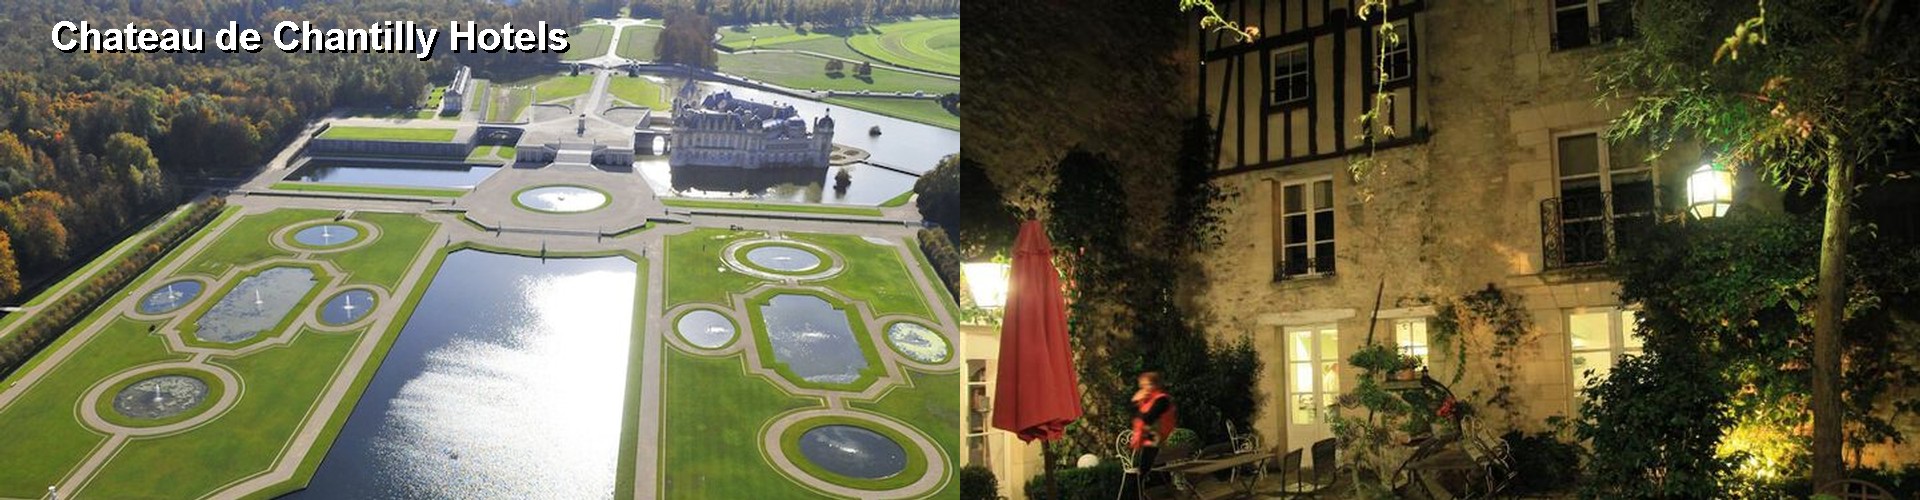 5 Best Hotels near Chateau de Chantilly